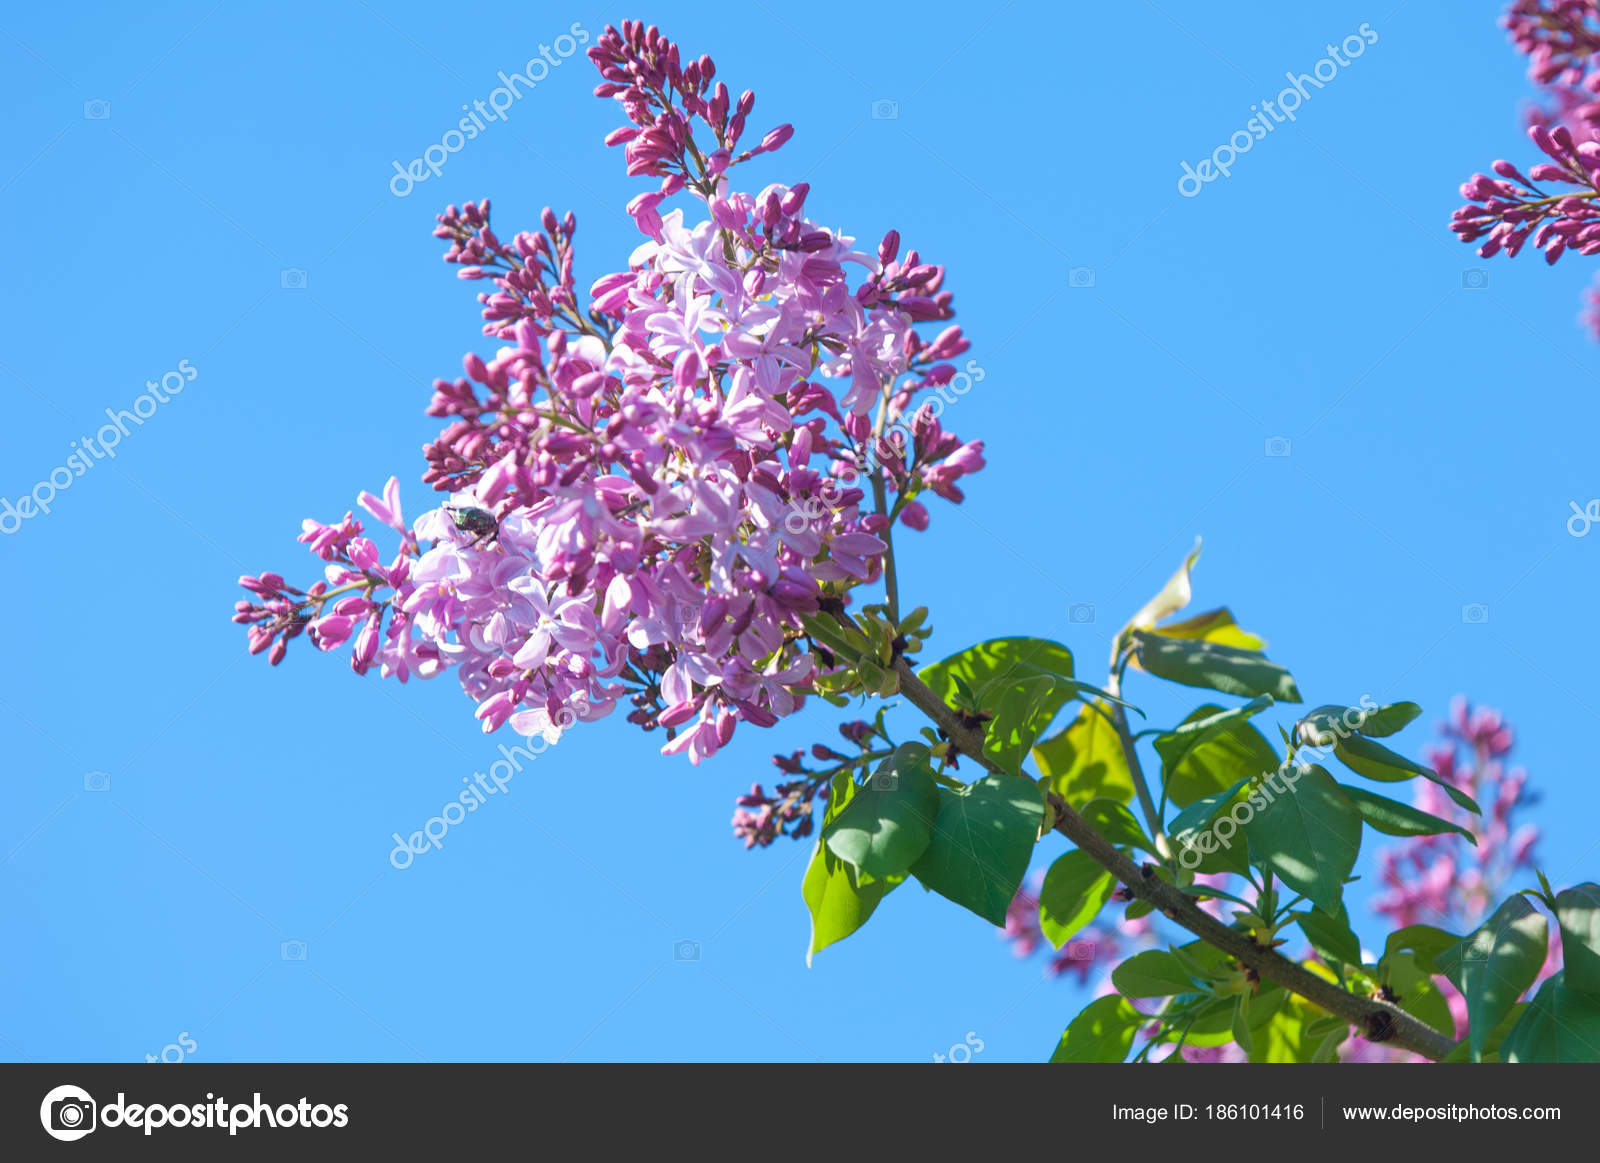 テクスチャ パターン ライラック色の花 淡いピンクがかった青紫色 紫色または白色の香りのよい花の大きな庭低木 ストック写真 C Ekina1